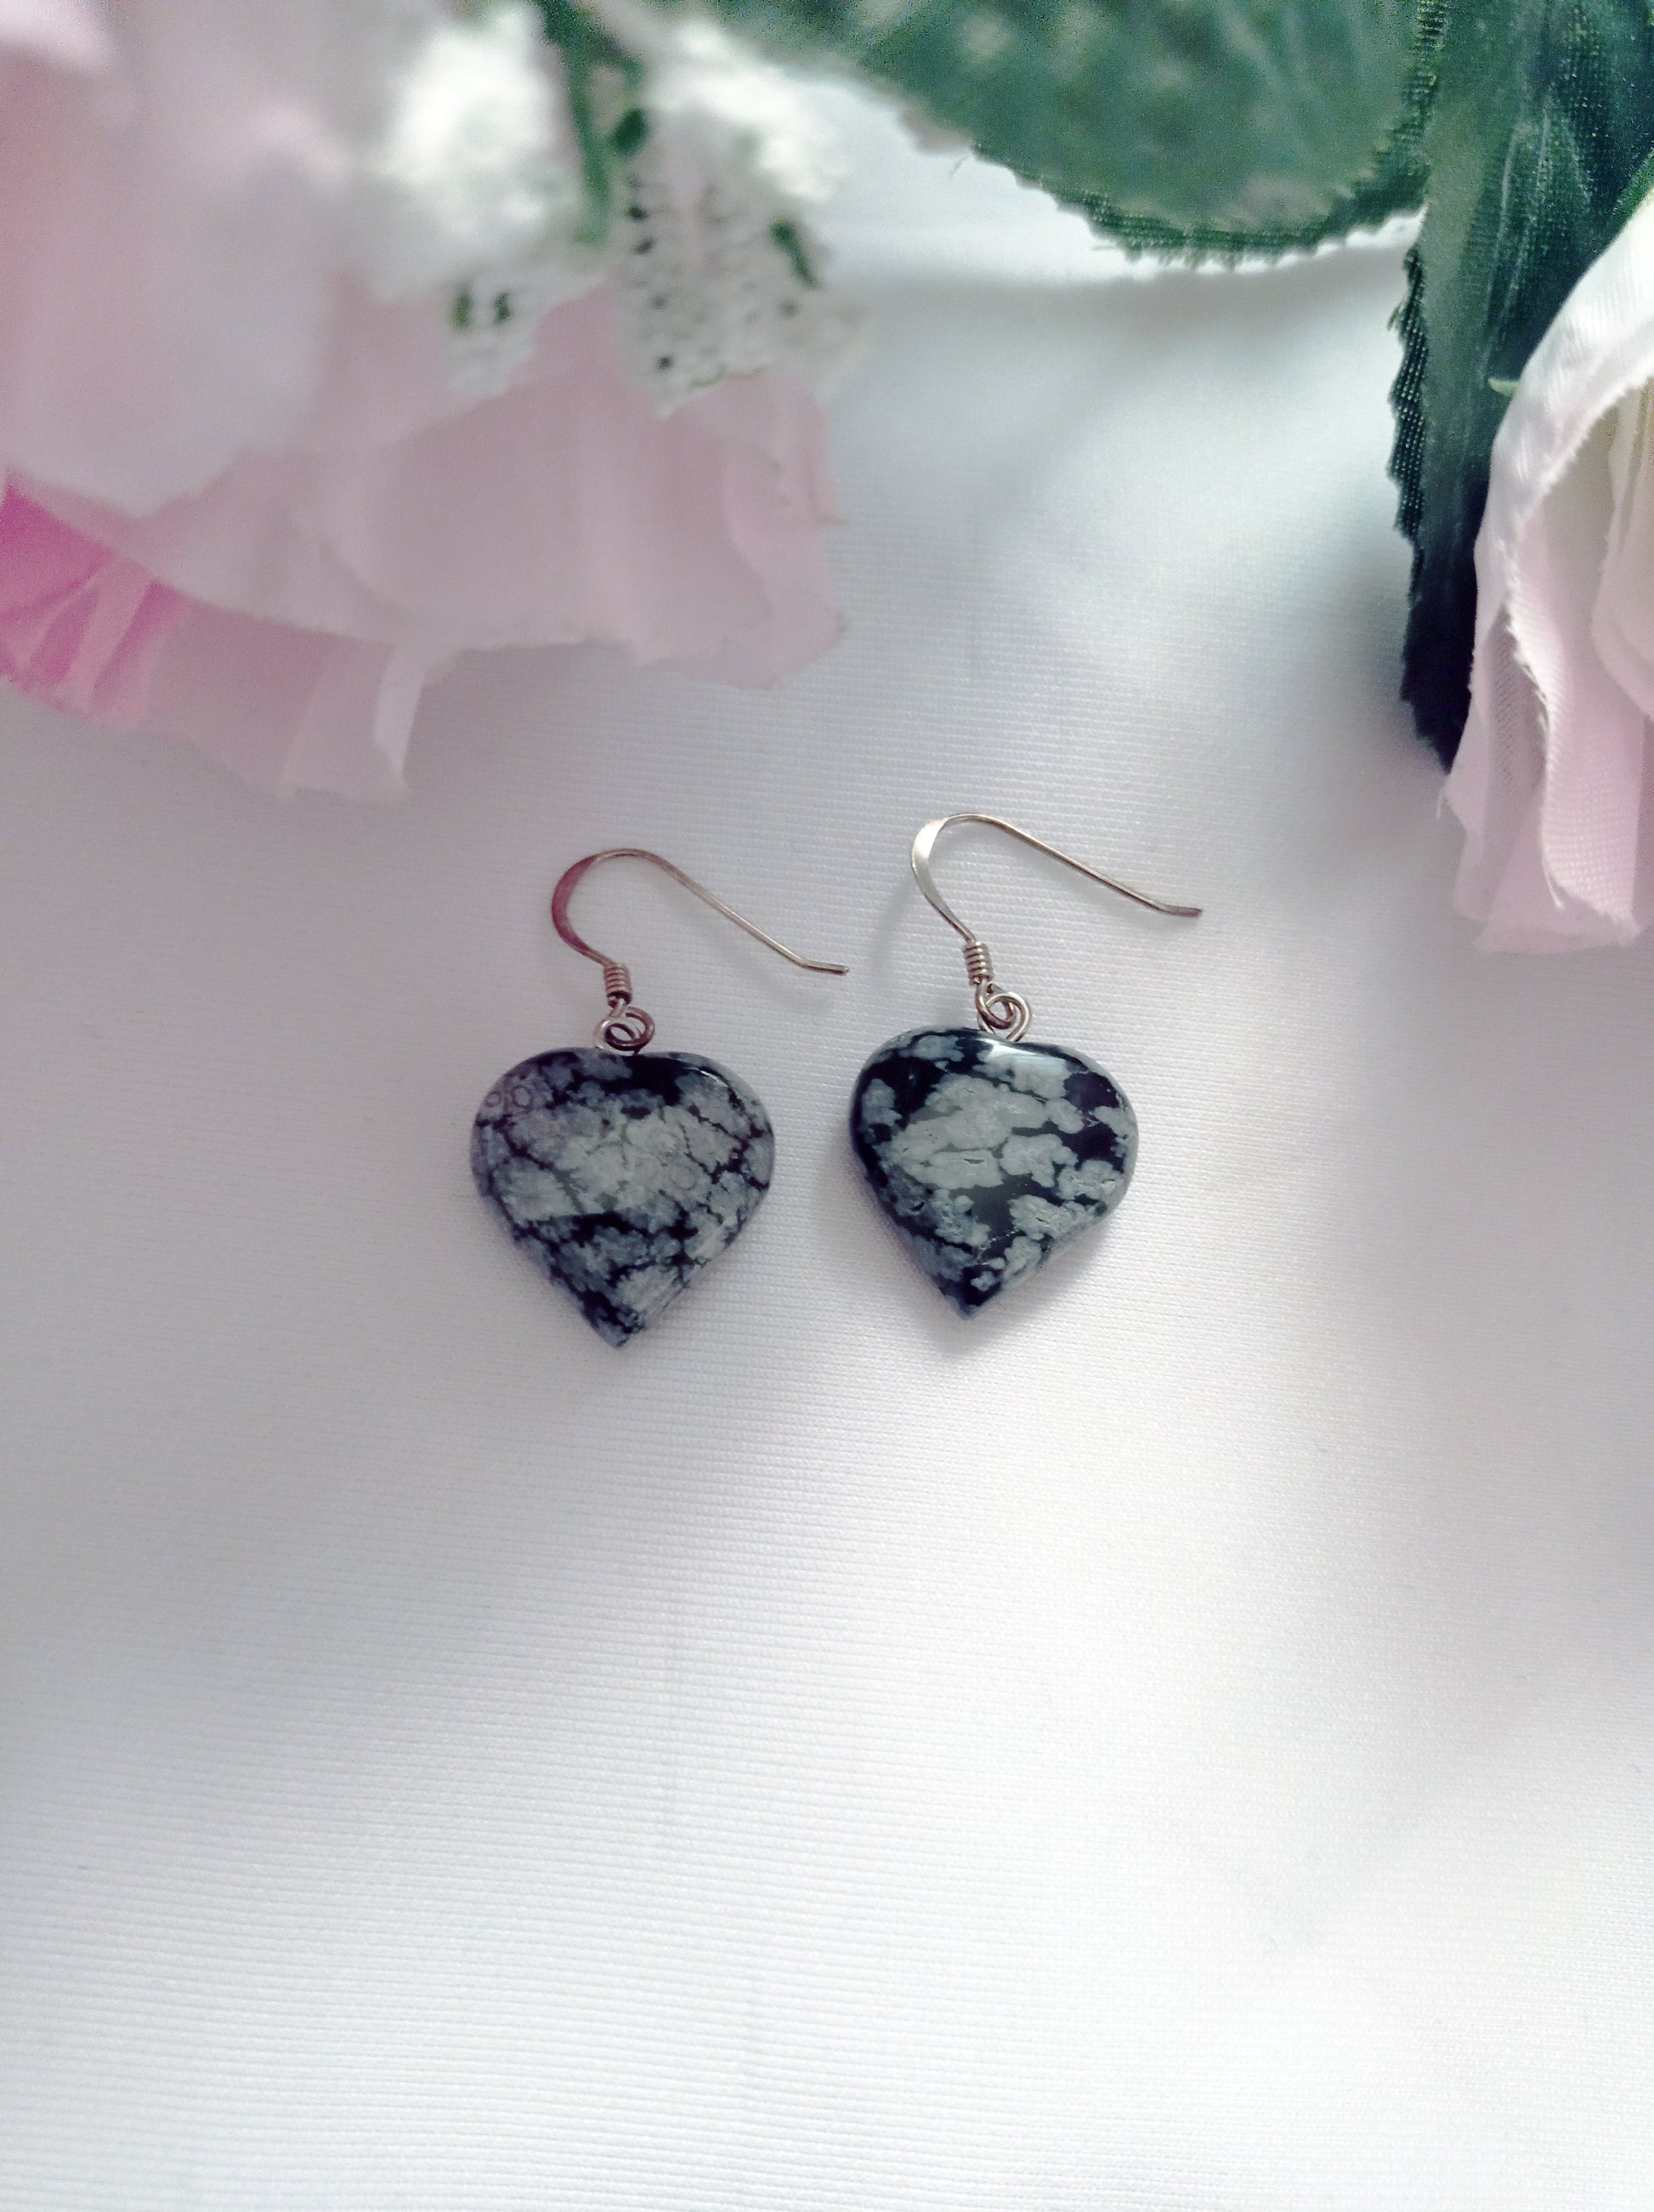 Snowflake Obsidian Drop Earrings, Heart Sterling Silver Drop Earrings, Gemstone Earrings | by nlanlaVictory-6